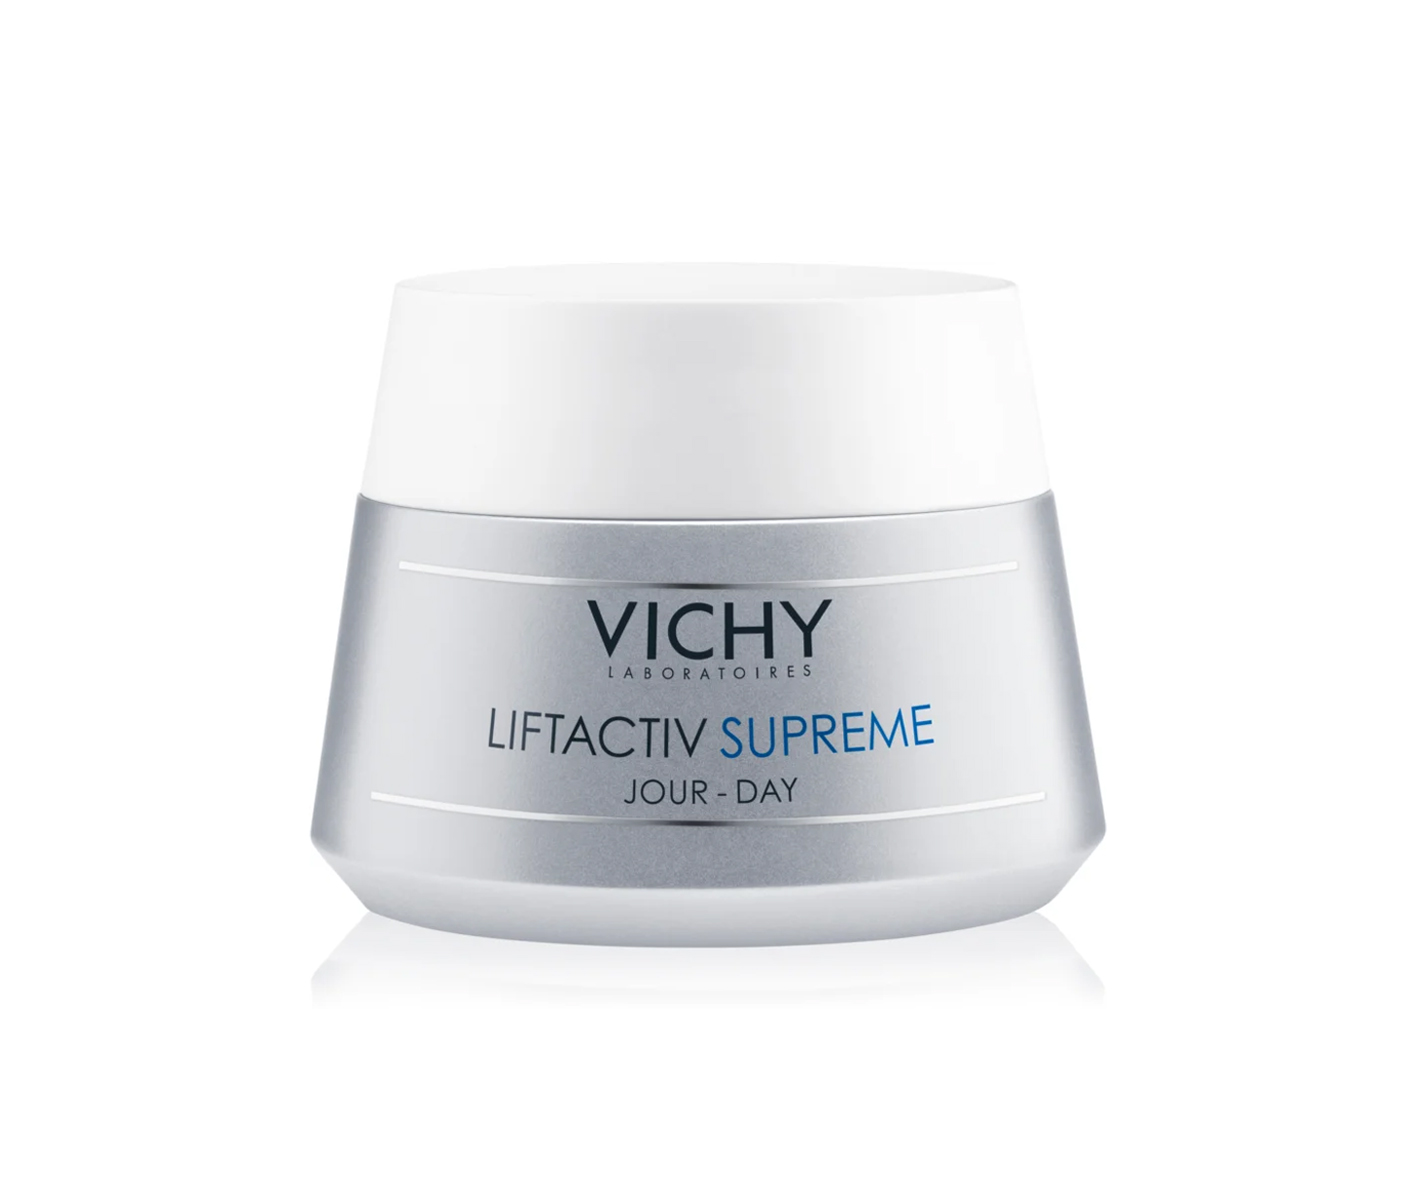 Vichy Liftactiv Supreme, lifting face cream